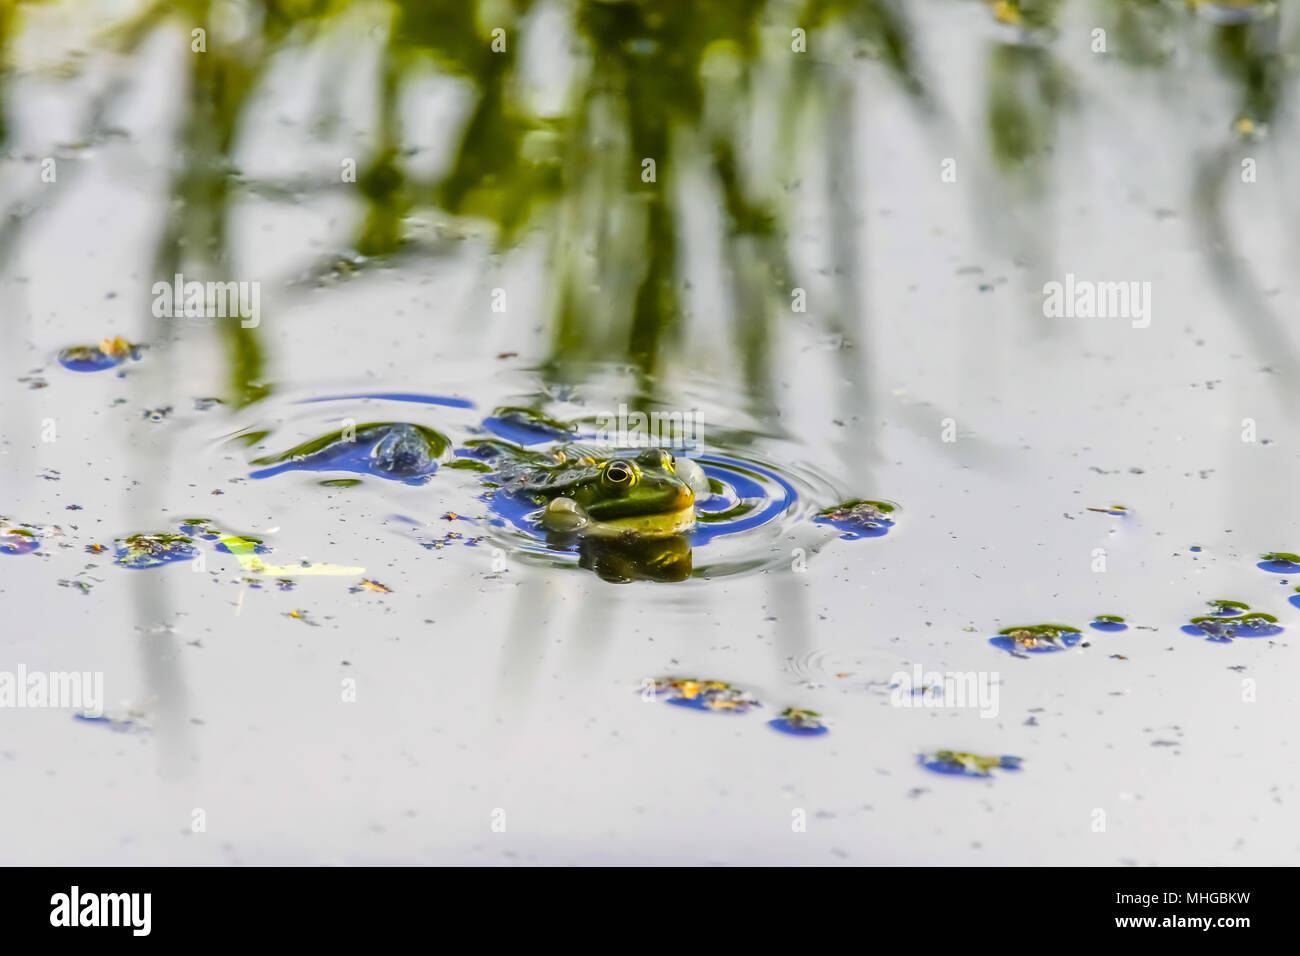 Edible frog (Pelophylax kl. esculentus), Lange Erlen, Riehen, Basel-Stadt Canton, Switzerland. Stock Photo